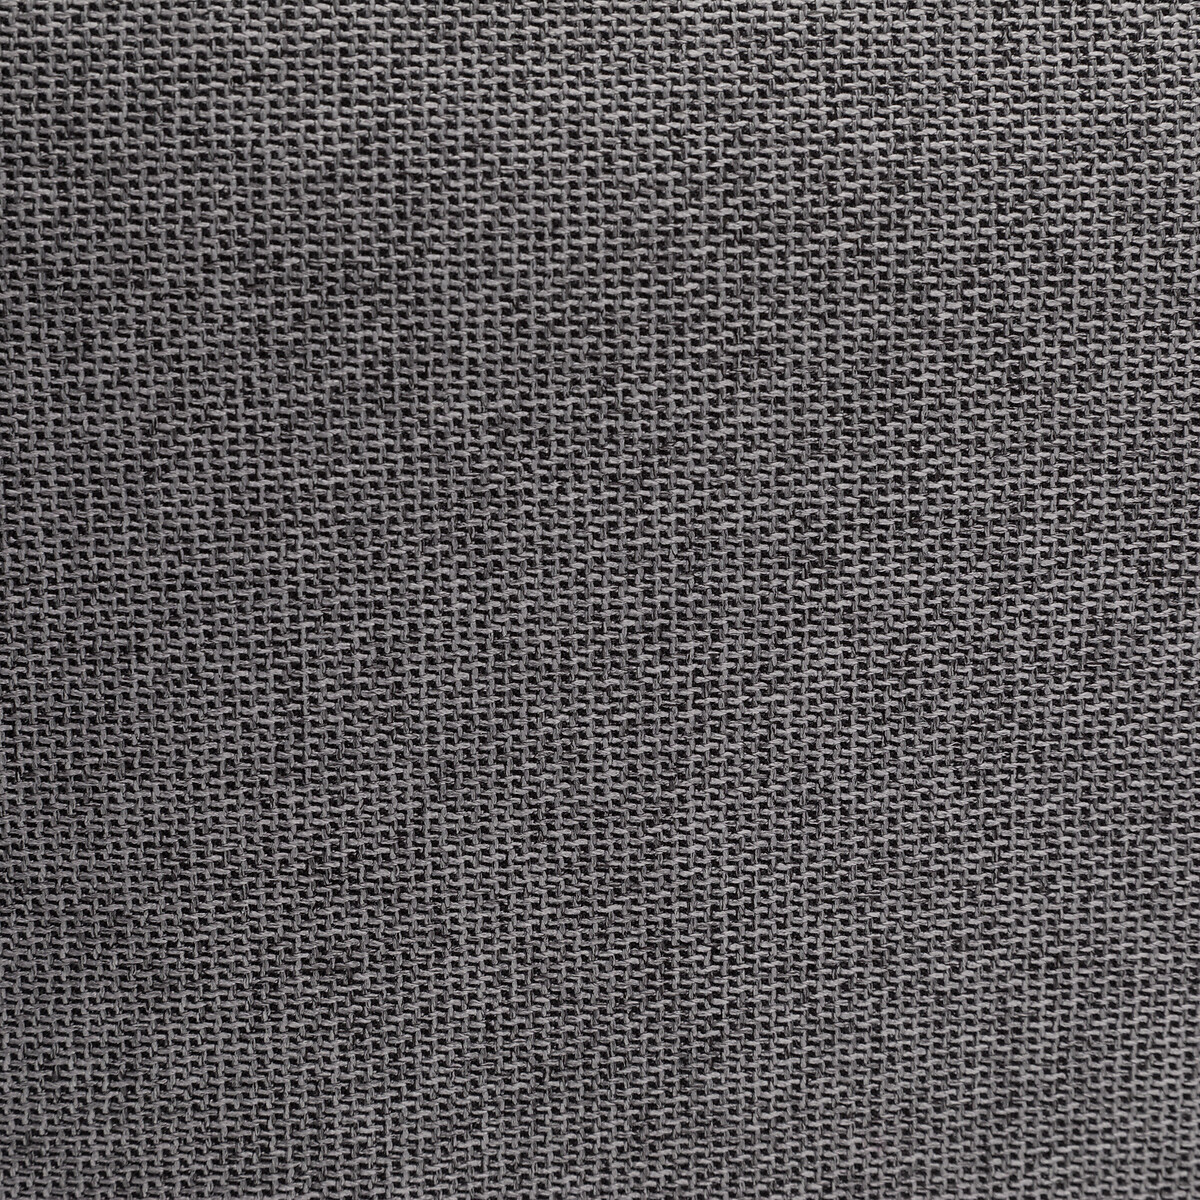 Чехол Для хранения XL с эффектом льна Lihoa единый размер серый LaRedoute - фото 3